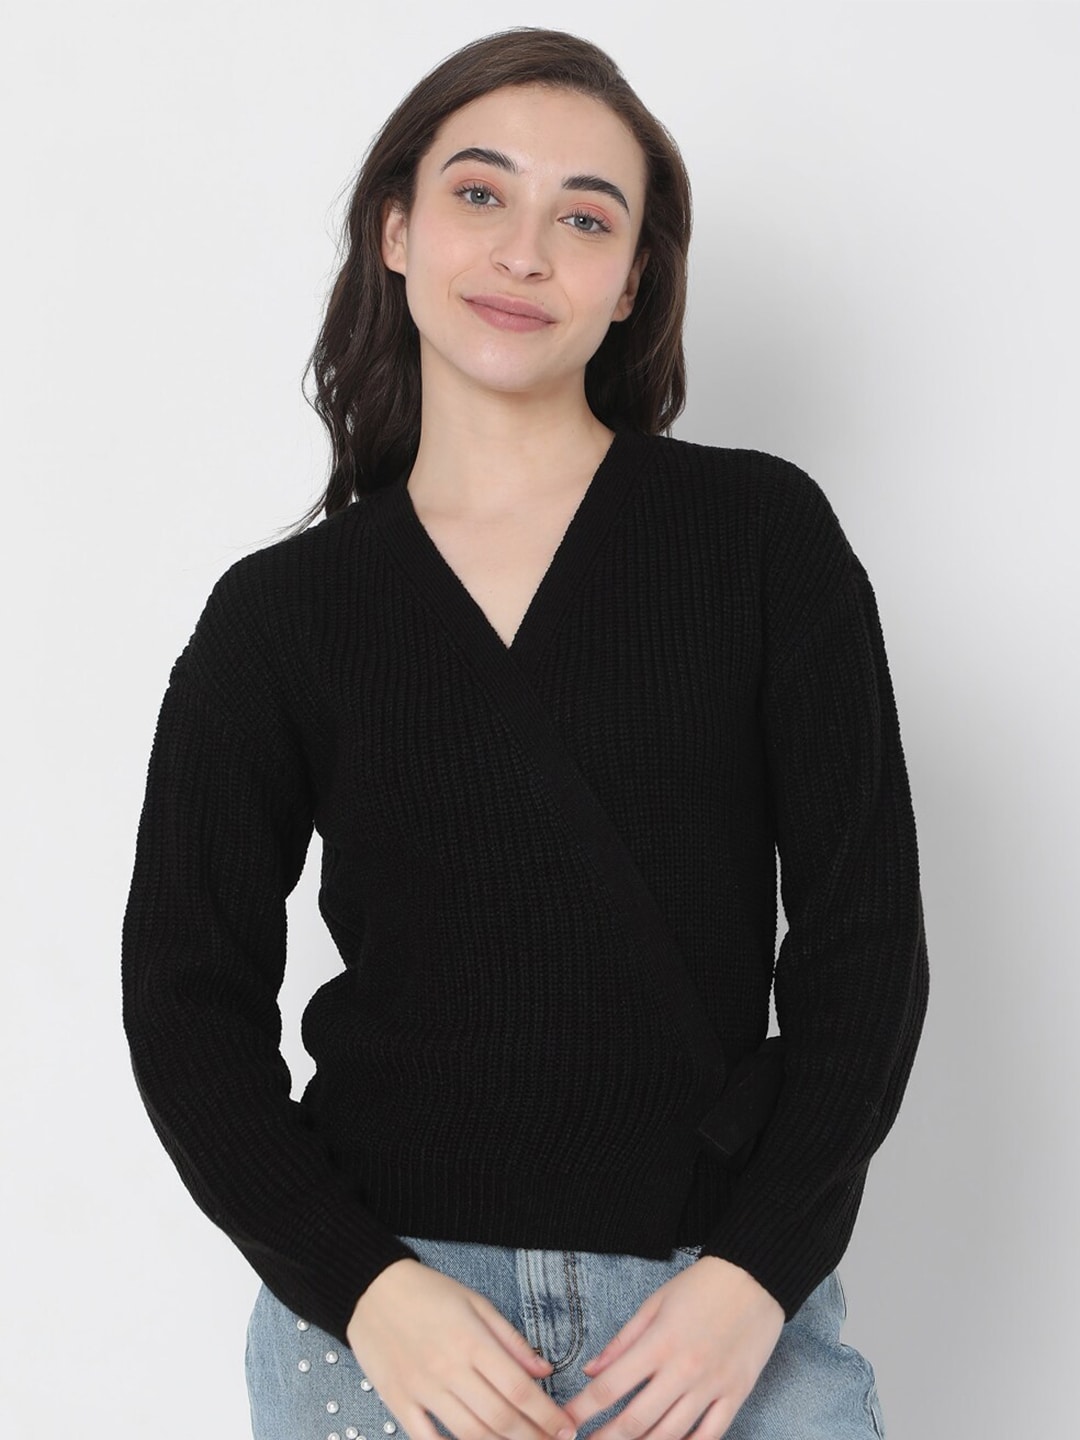 Vero Moda Women Black Cable Knit Pullover Sweater Price in India